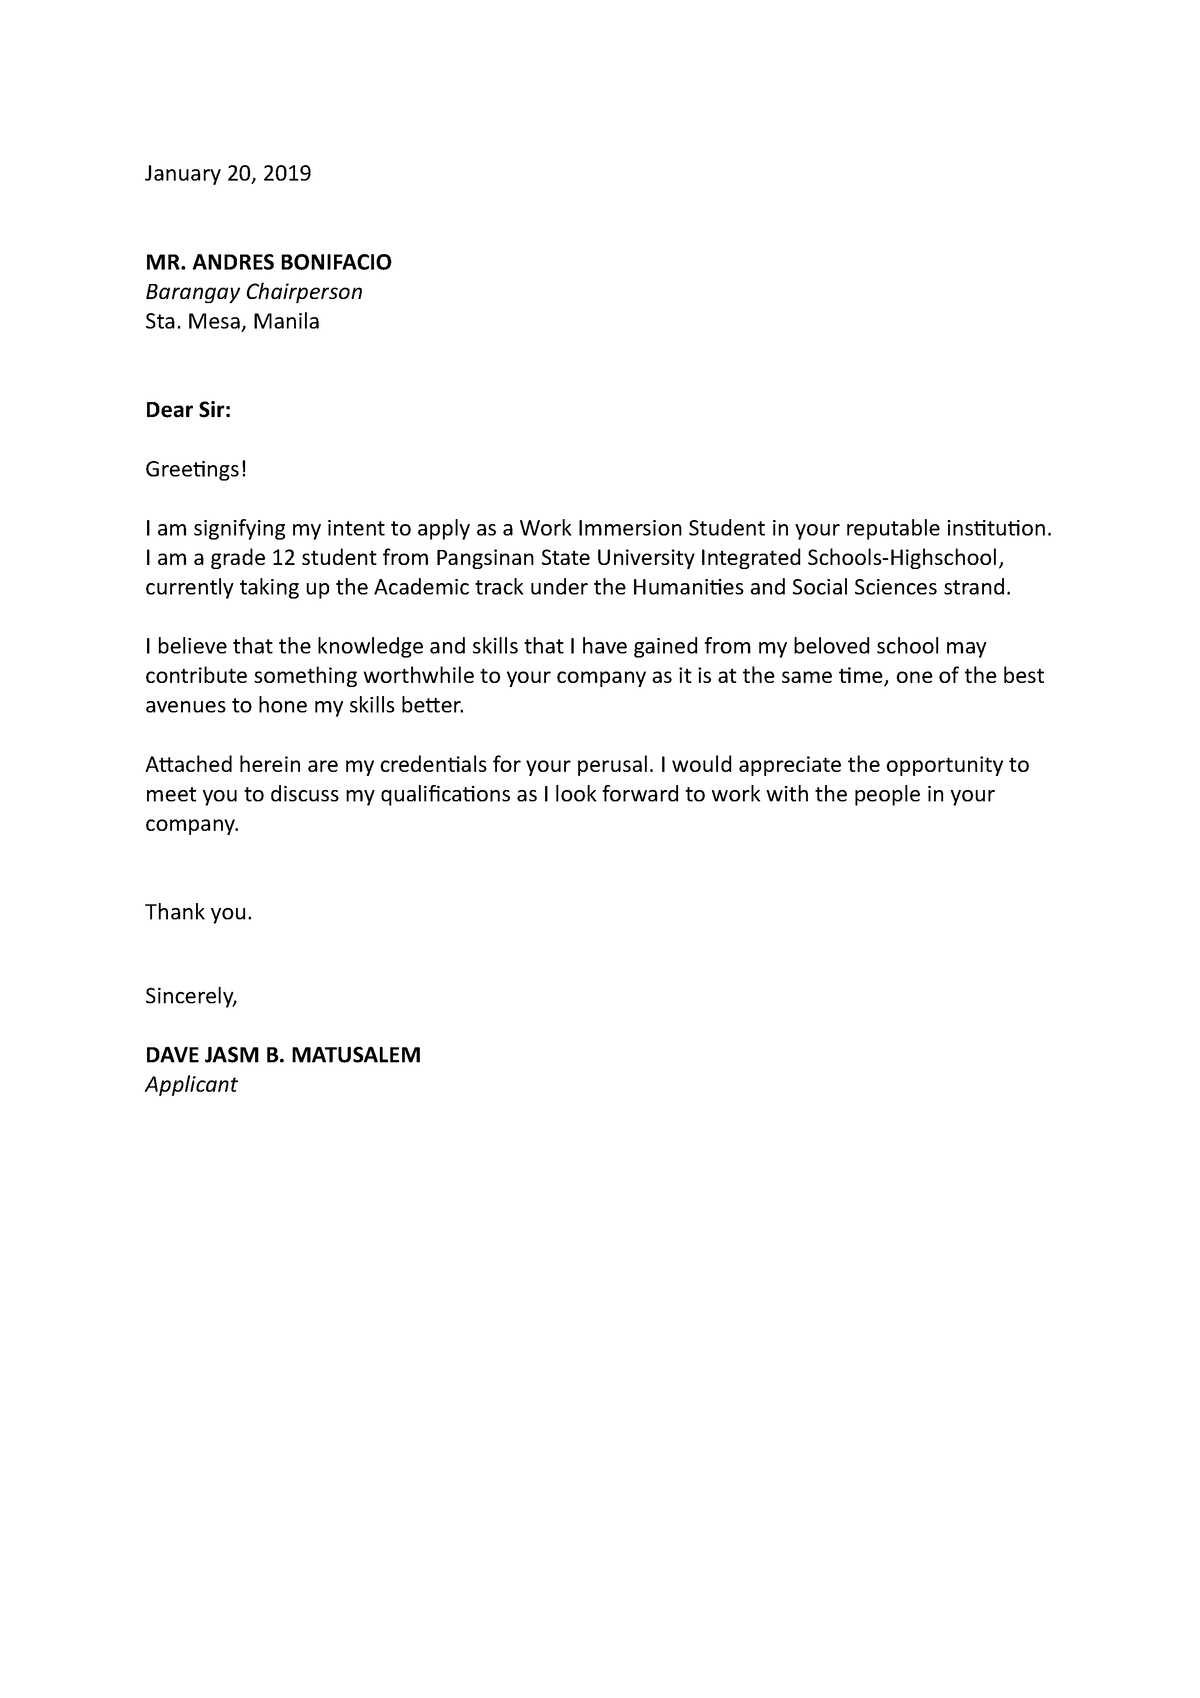 Application letter Jasm Matusalem - January 20, 2019 MR. ANDRES ...